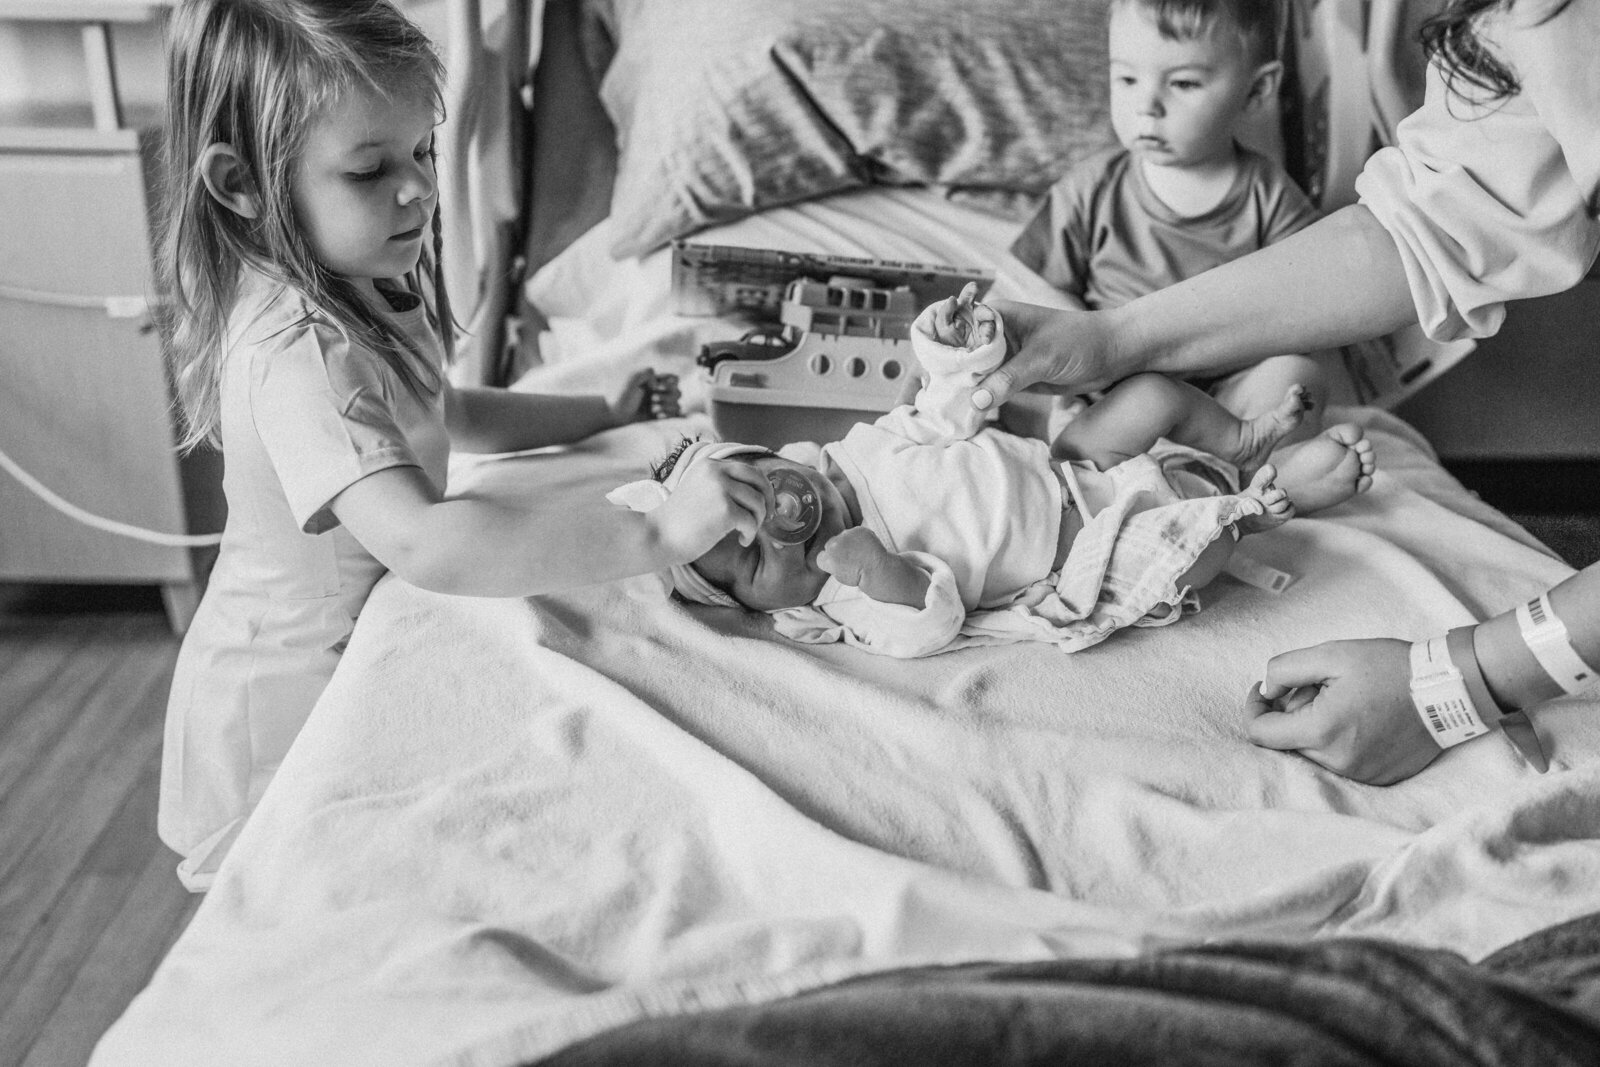 siblings in bed looking at baby